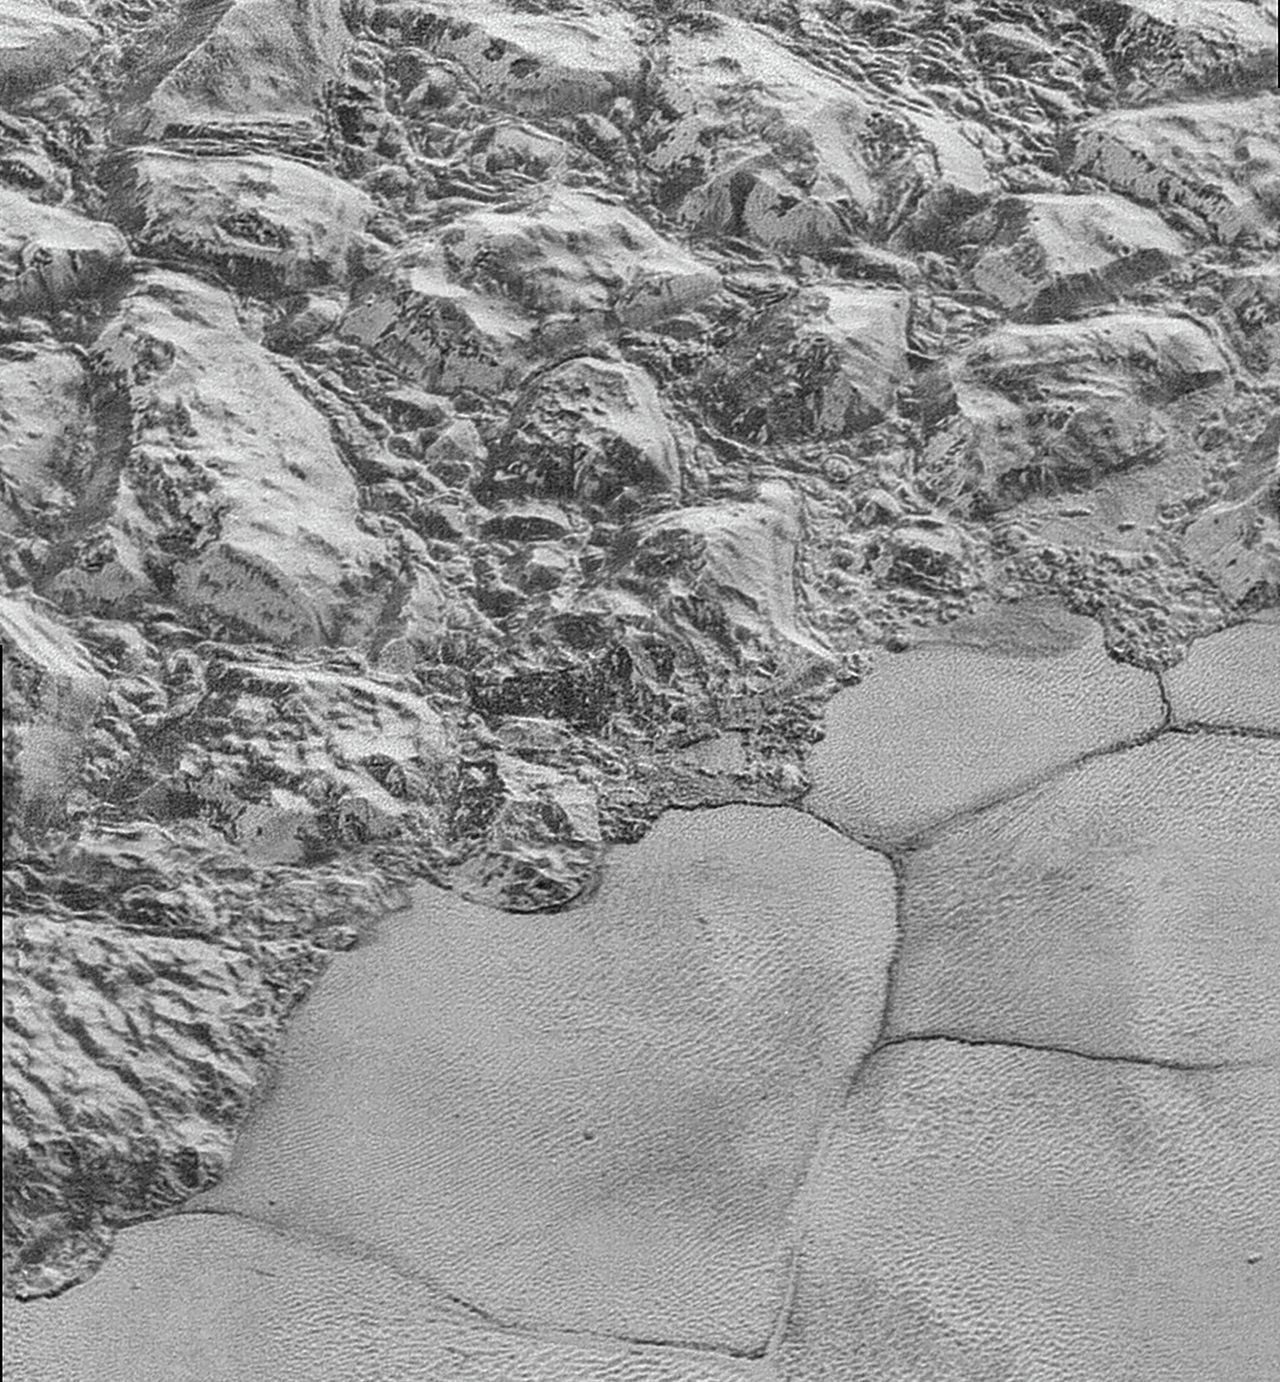 Op de duinen van Pluto dwarrelen methaanvlokjes 